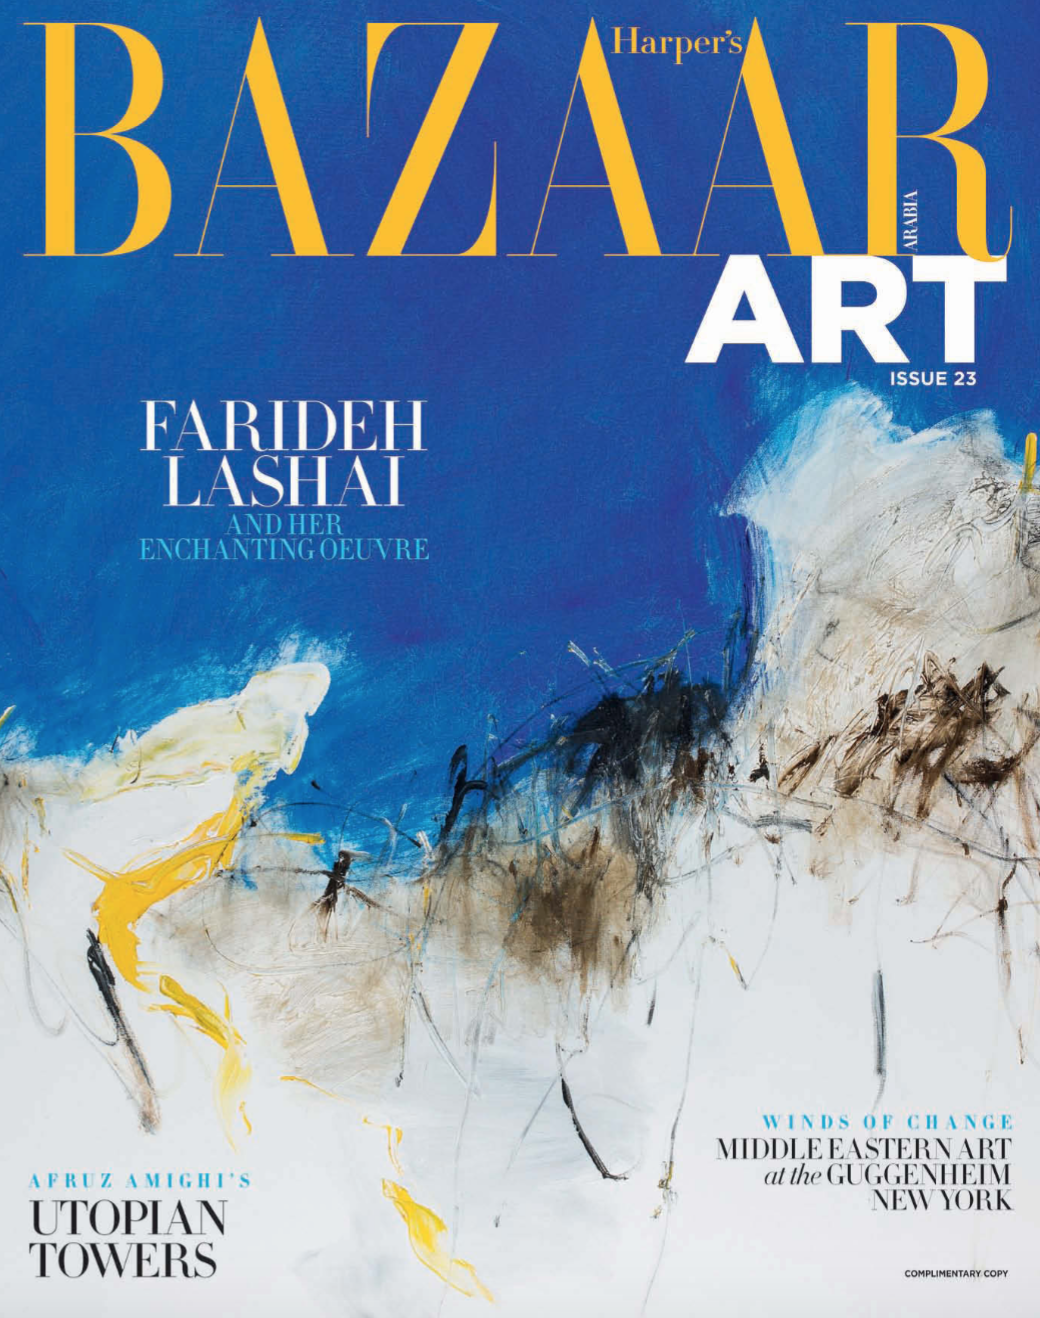 Harper's Bazaar Art Arabia - Summer 2016